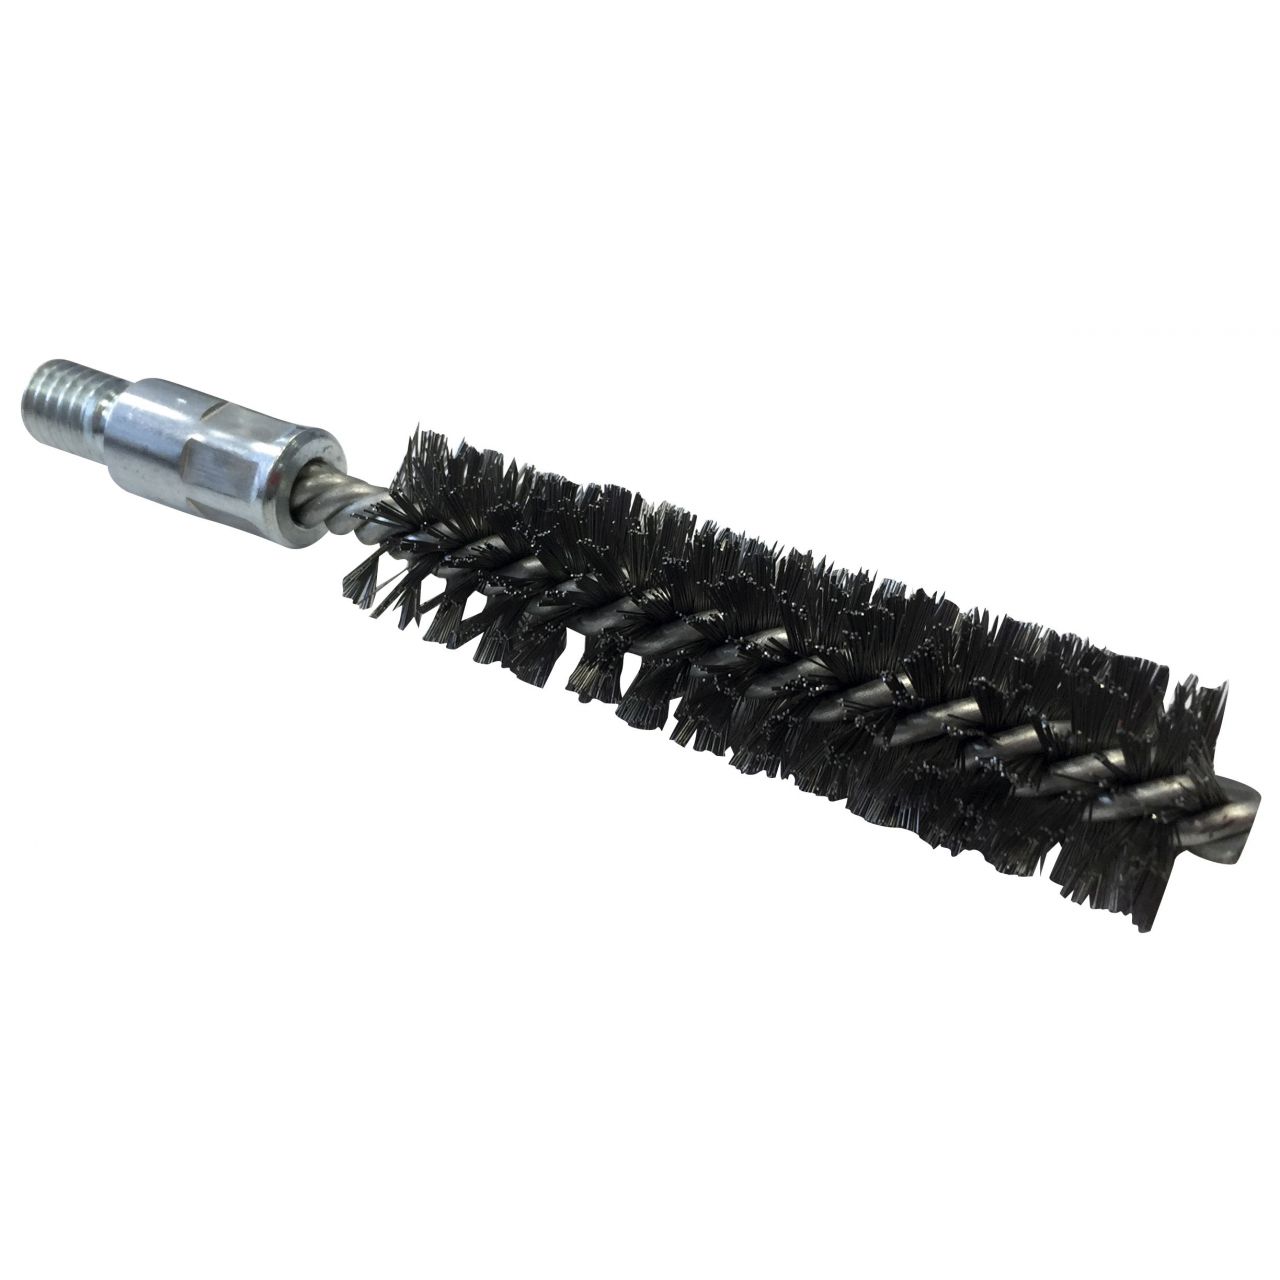 Cepillo limpiatubos con rosca de acero (110 mm x Ø 15 mm)